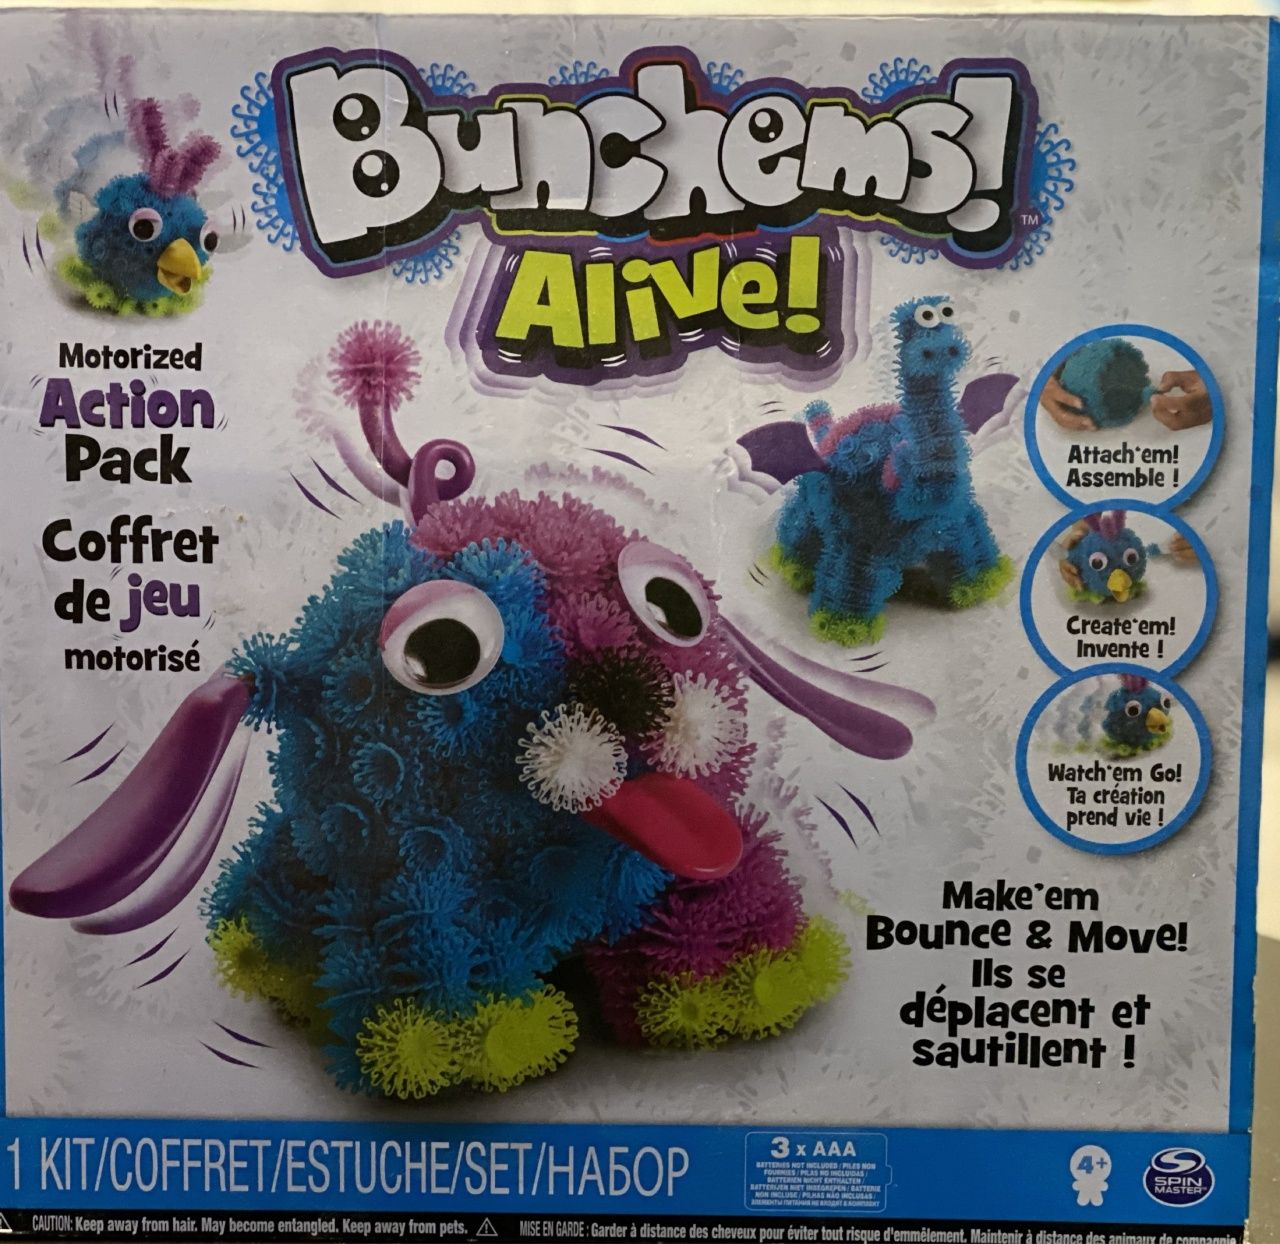 Bunchems Alive duży zestaw rzepy dla dzieci zabawki XXL mega pack